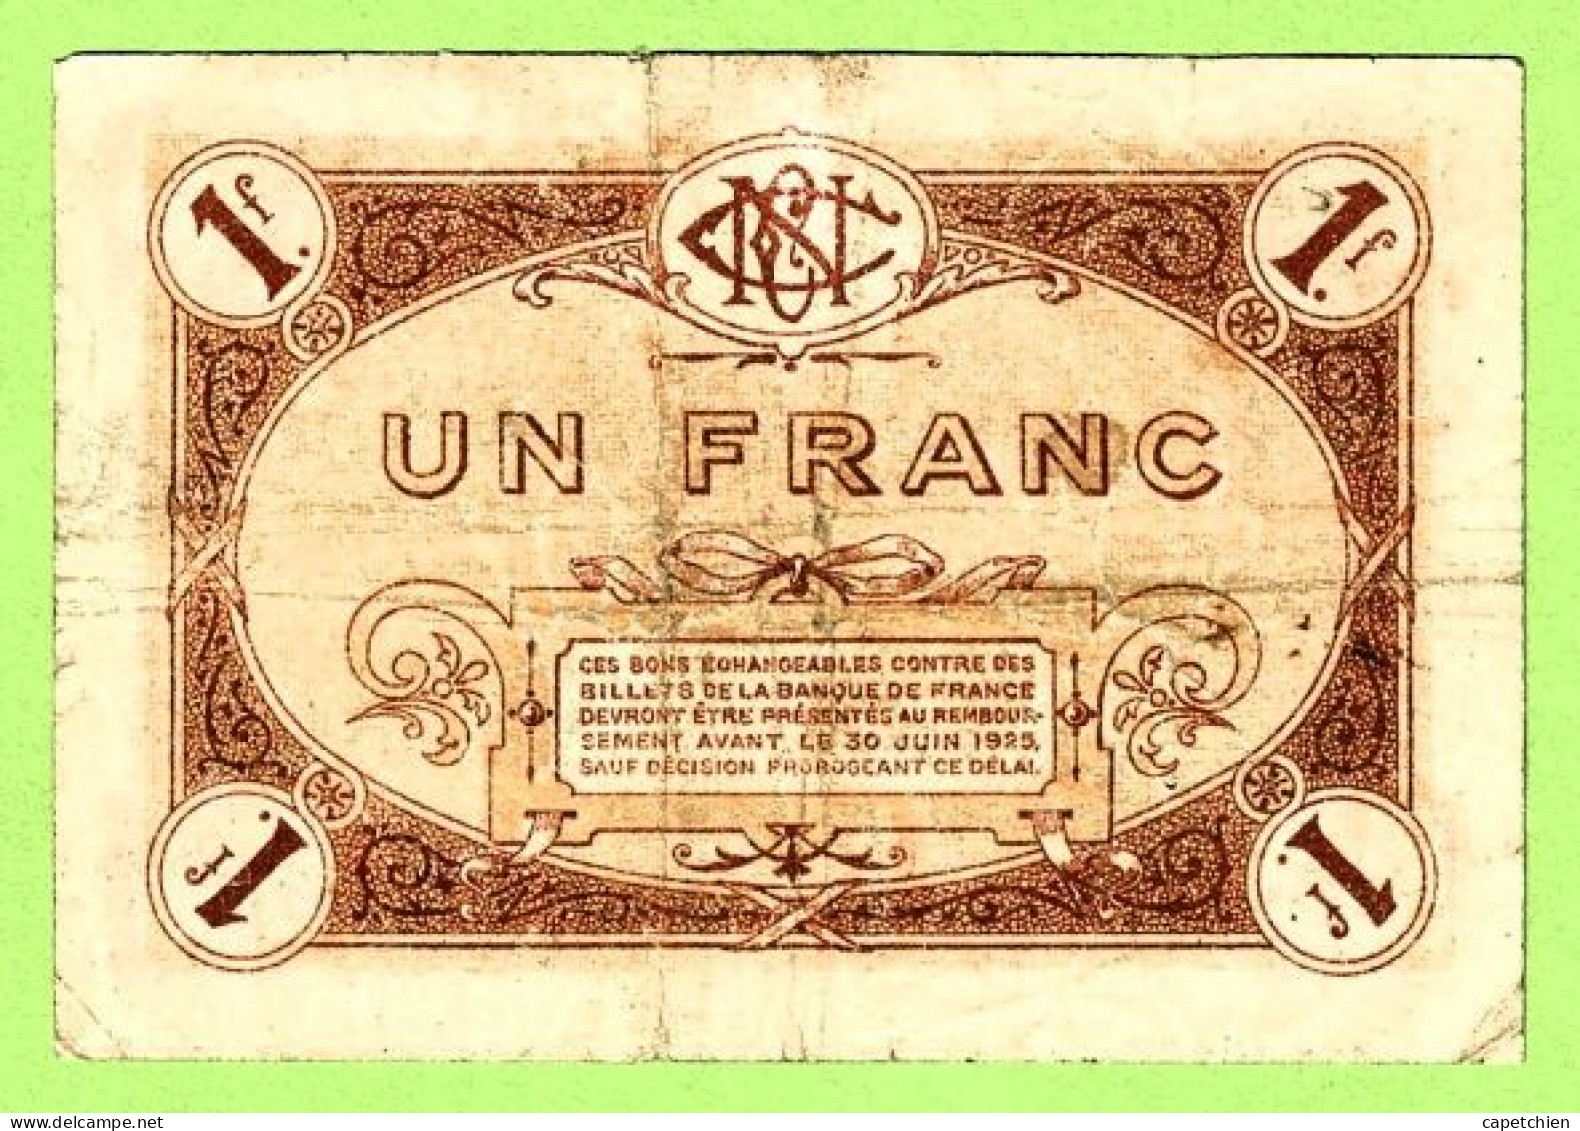 FRANCE /  CHAMBRE De COMMERCE De NEVERS / 1 Franc / 1 Er JUILLET 1920  N° 398,958 / 4 ème SERIE - Chambre De Commerce